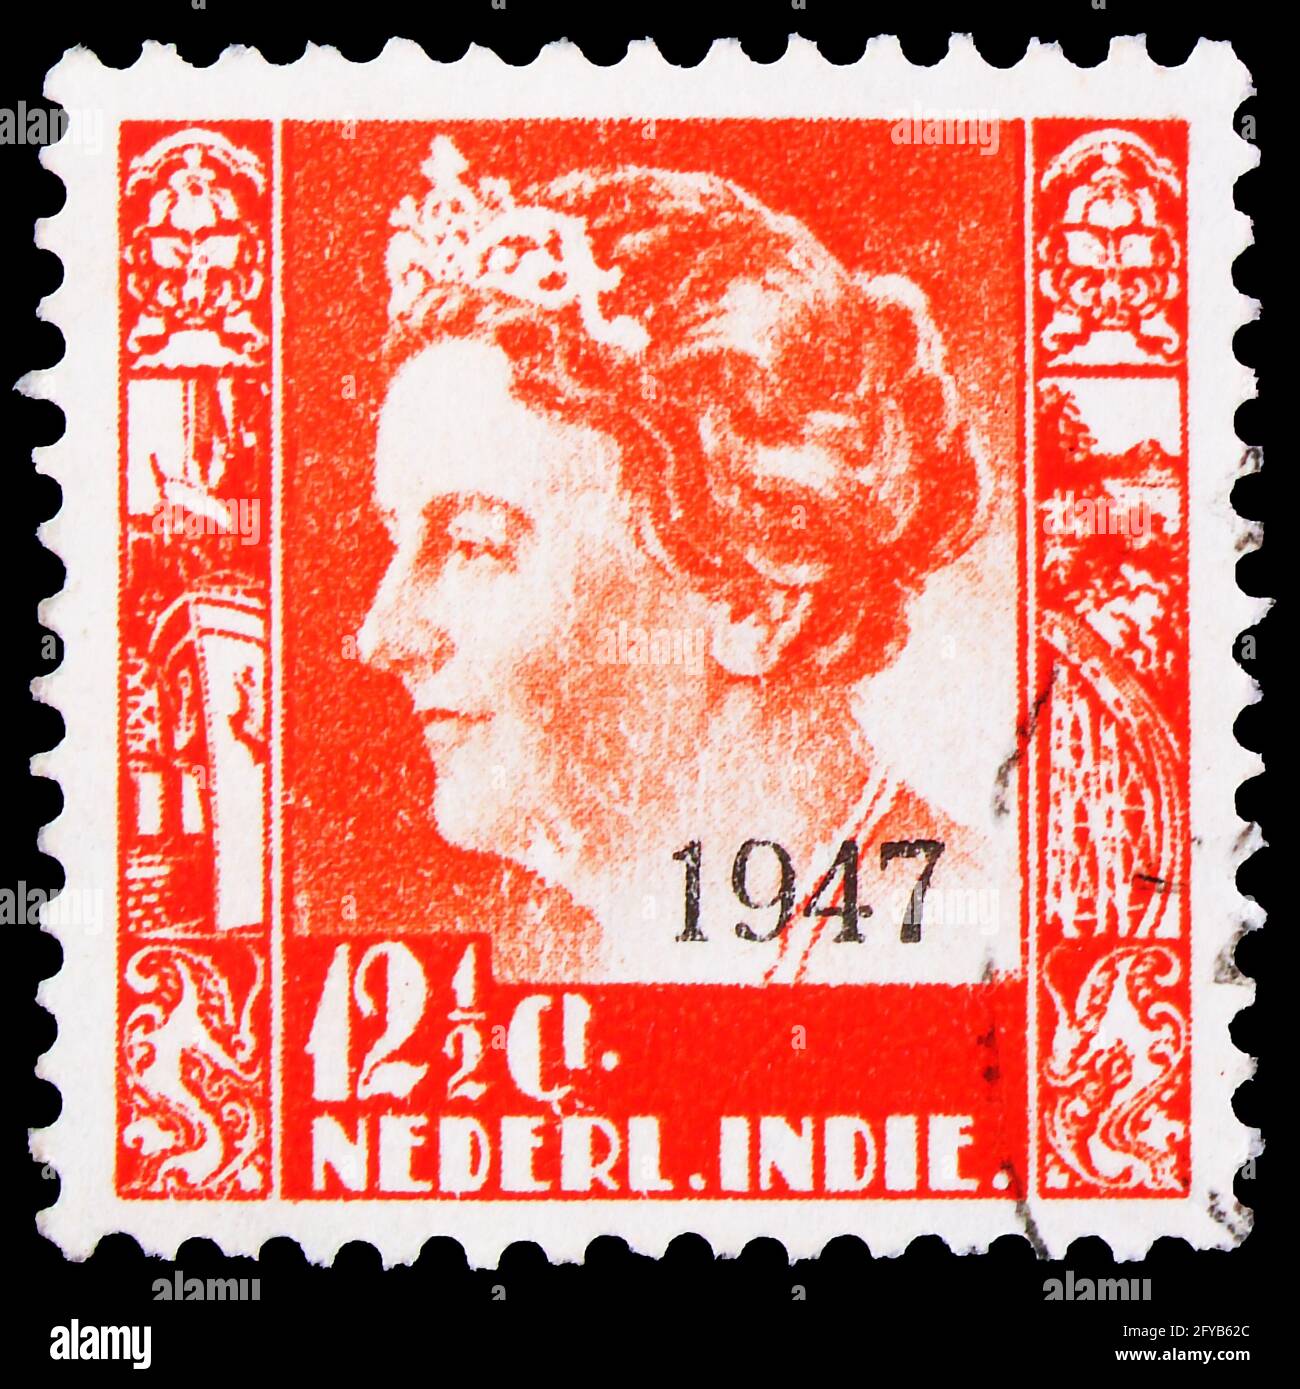 MOSKAU, RUSSLAND - 23. SEPTEMBER 2019: In den Niederlanden gedruckte Briefmarke zeigt Königin Wilhelmina (überdruckt), Typ 'Kreisler' Serie, um 1947 Stockfoto